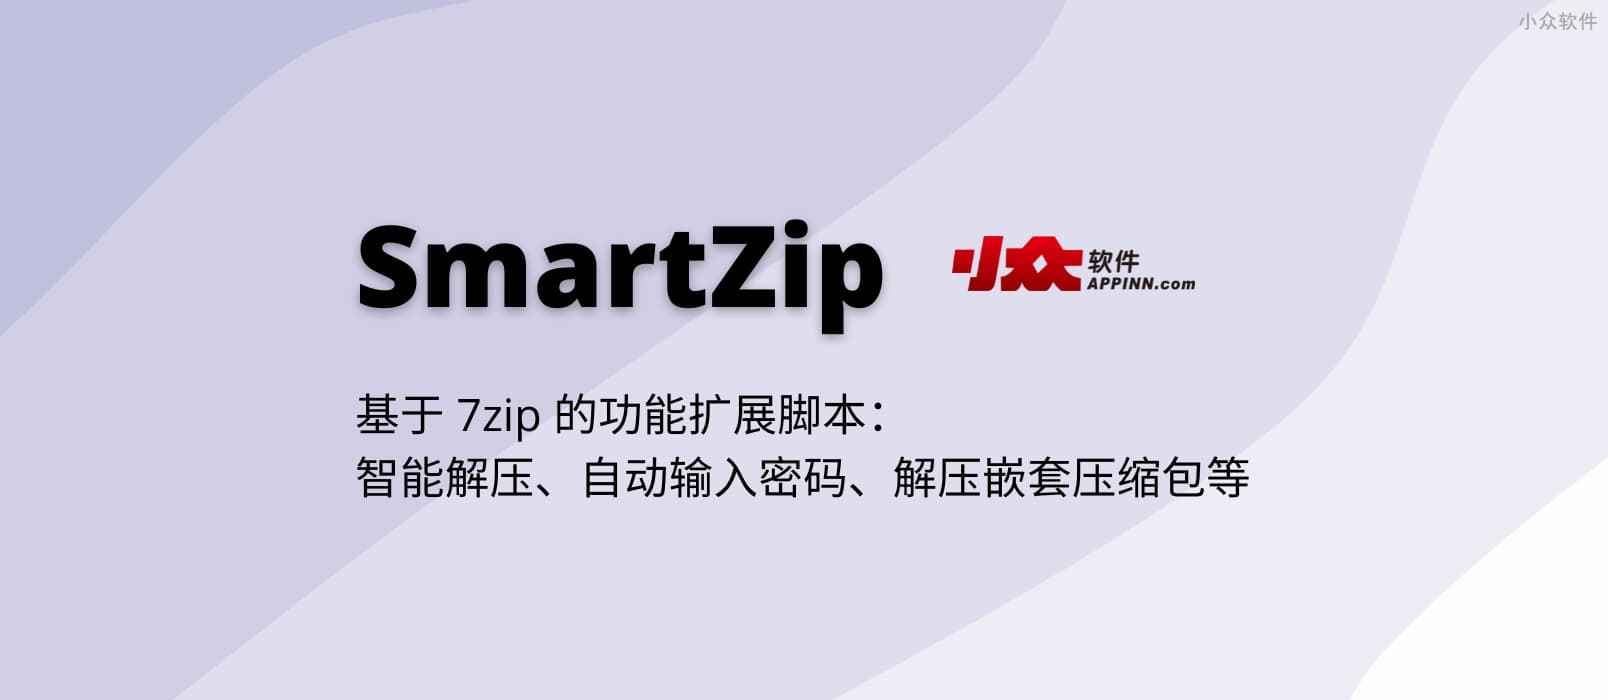 SmartZip - 基于 7zip 的功能扩展脚本：智能解压、自动输入密码、解压嵌套压缩包等